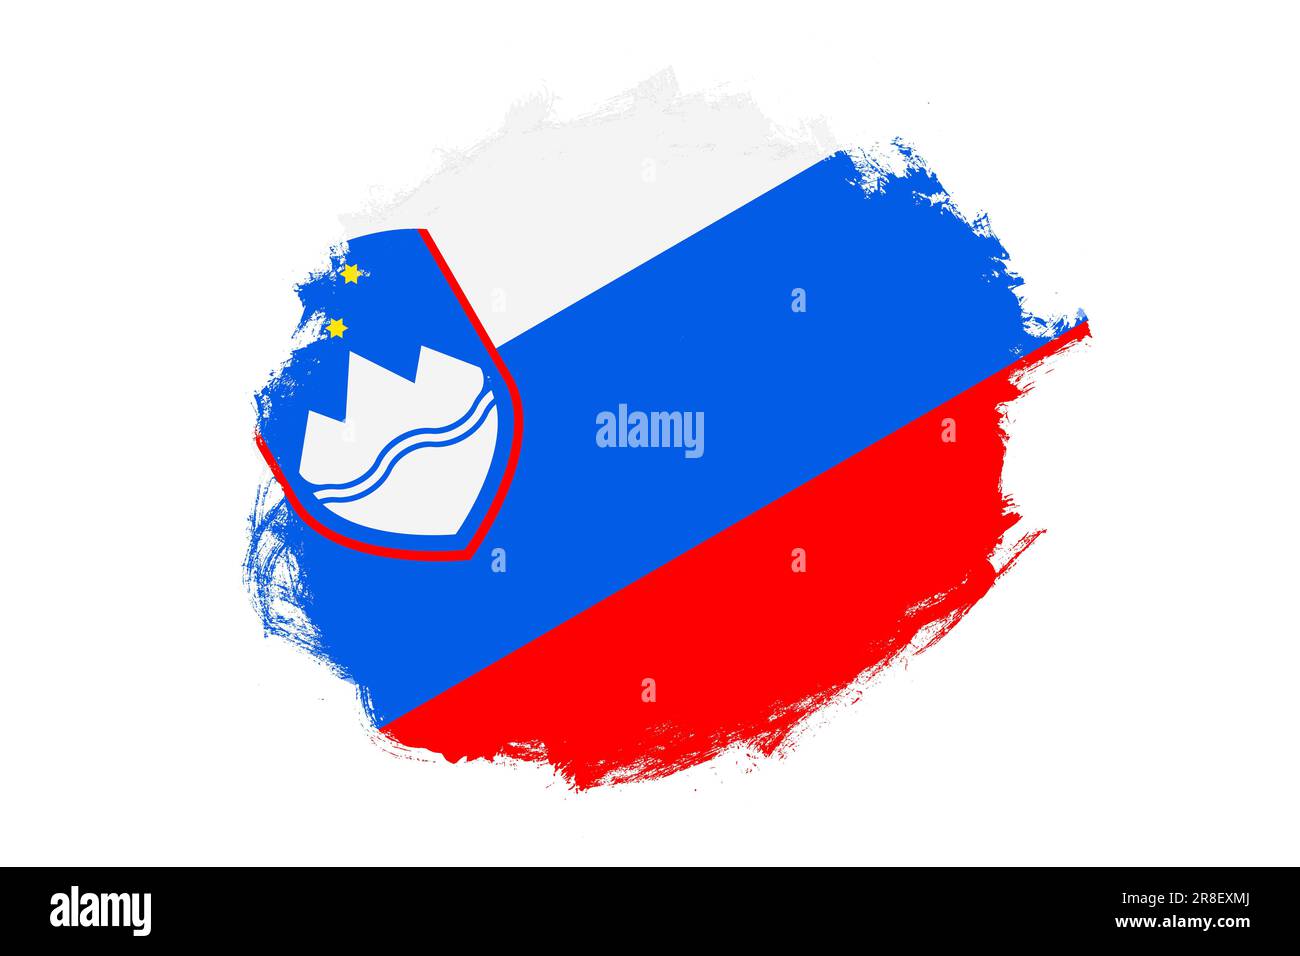 Abgerundeter, fleckiger Strichpinsel, strukturierte Nationalflagge Sloweniens auf weißem Hintergrund Stockfoto